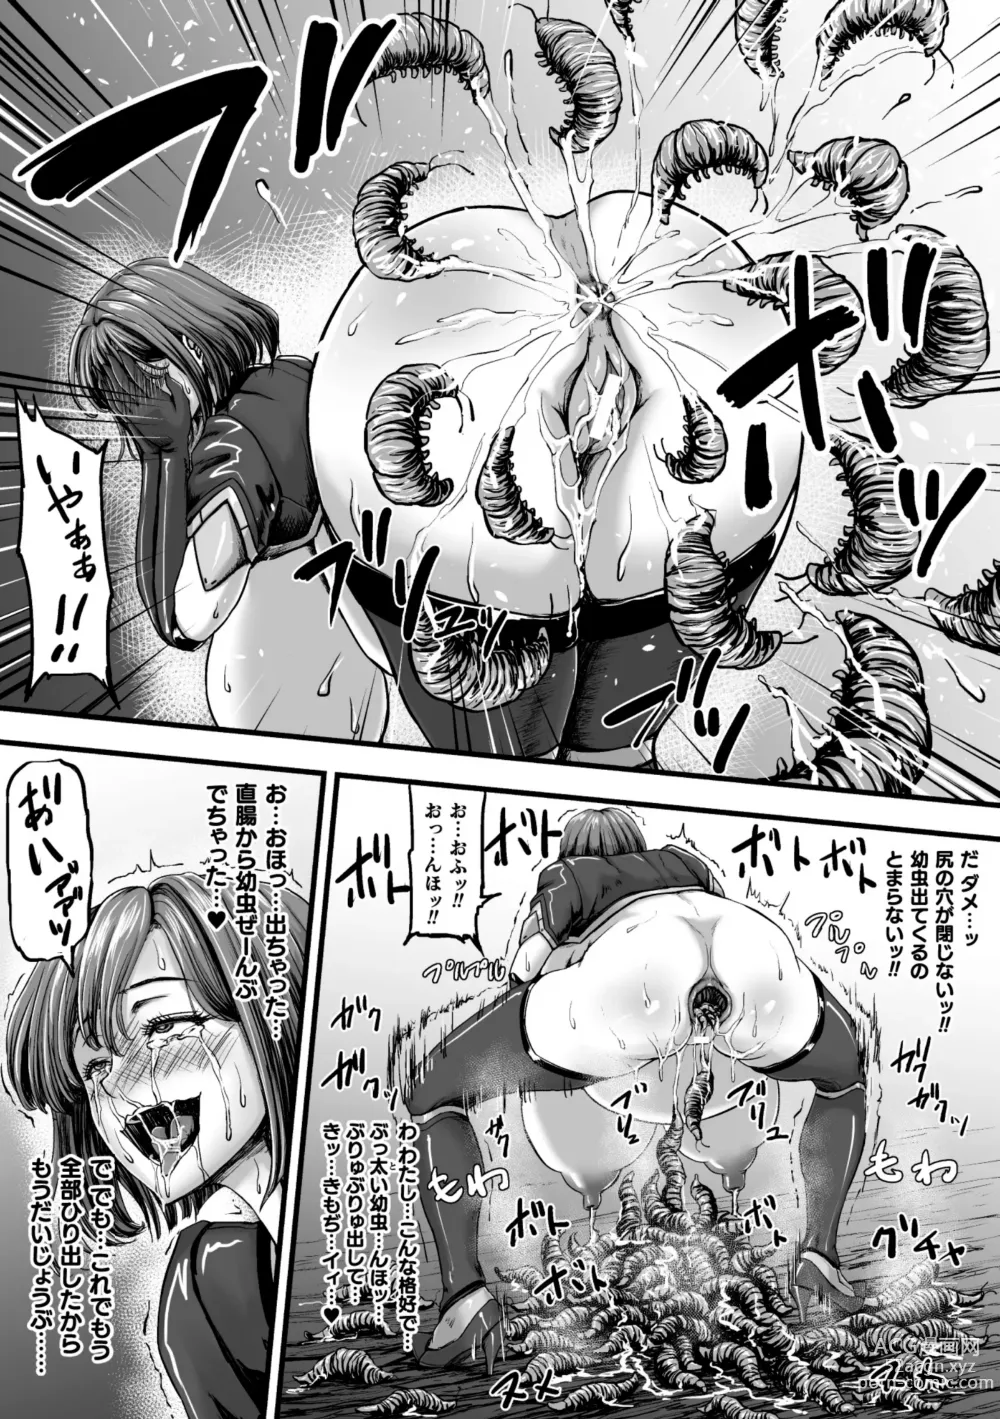 Page 41 of manga Kangoku Tentacle Battleship Episode 3